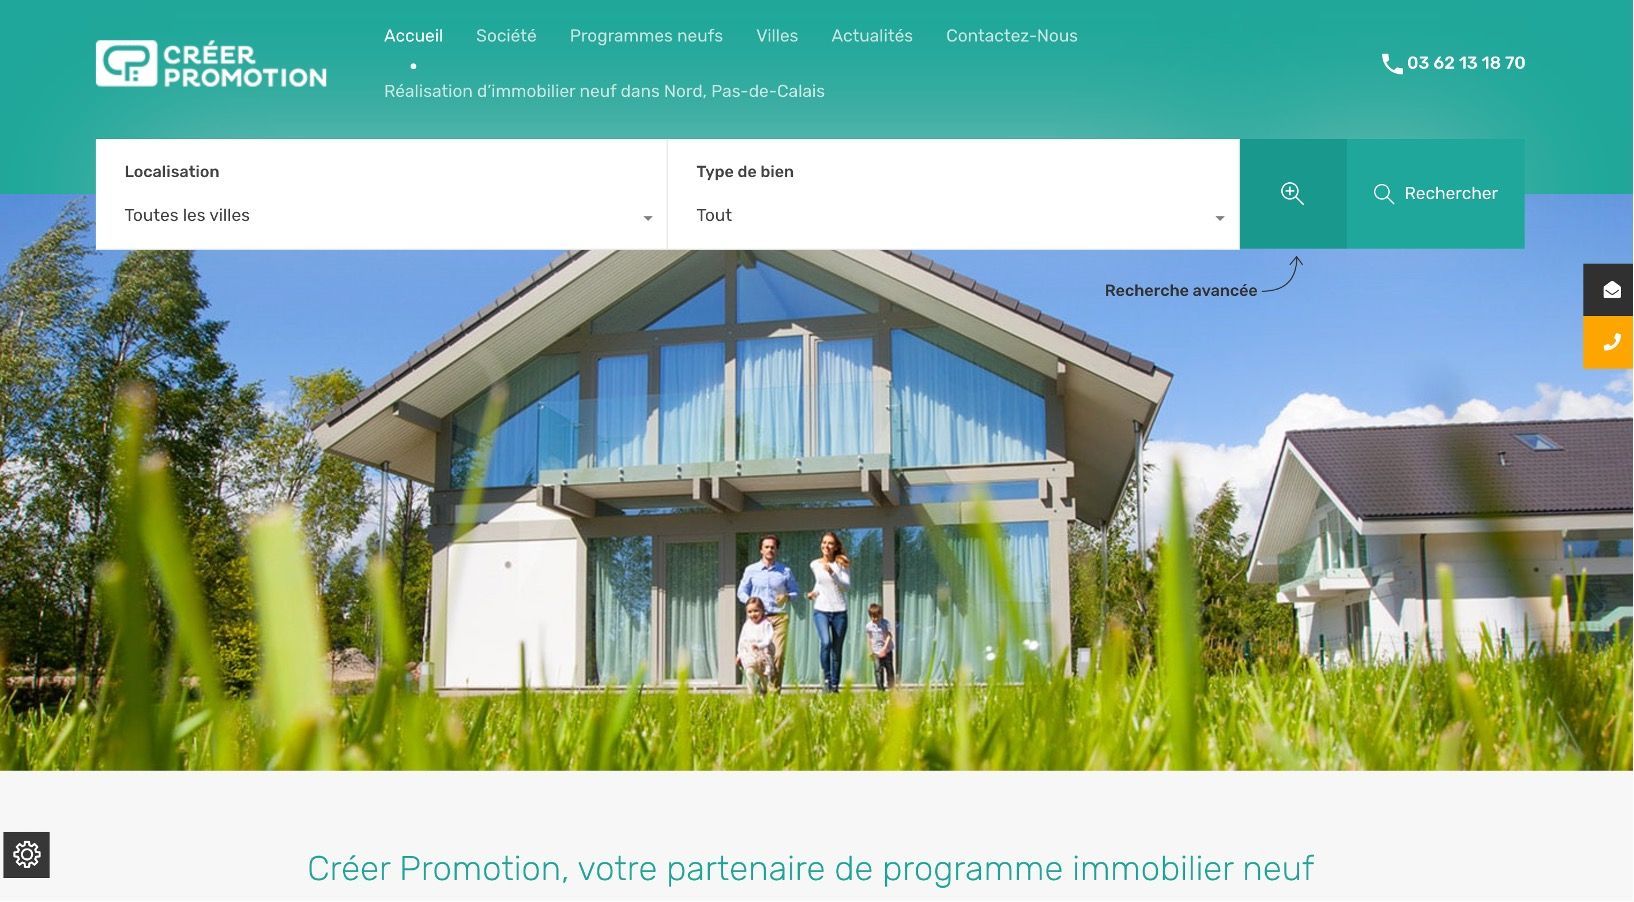 WSI a accompagné la société Promotion immobilier dans la mise en place de sa stratégie digitale.